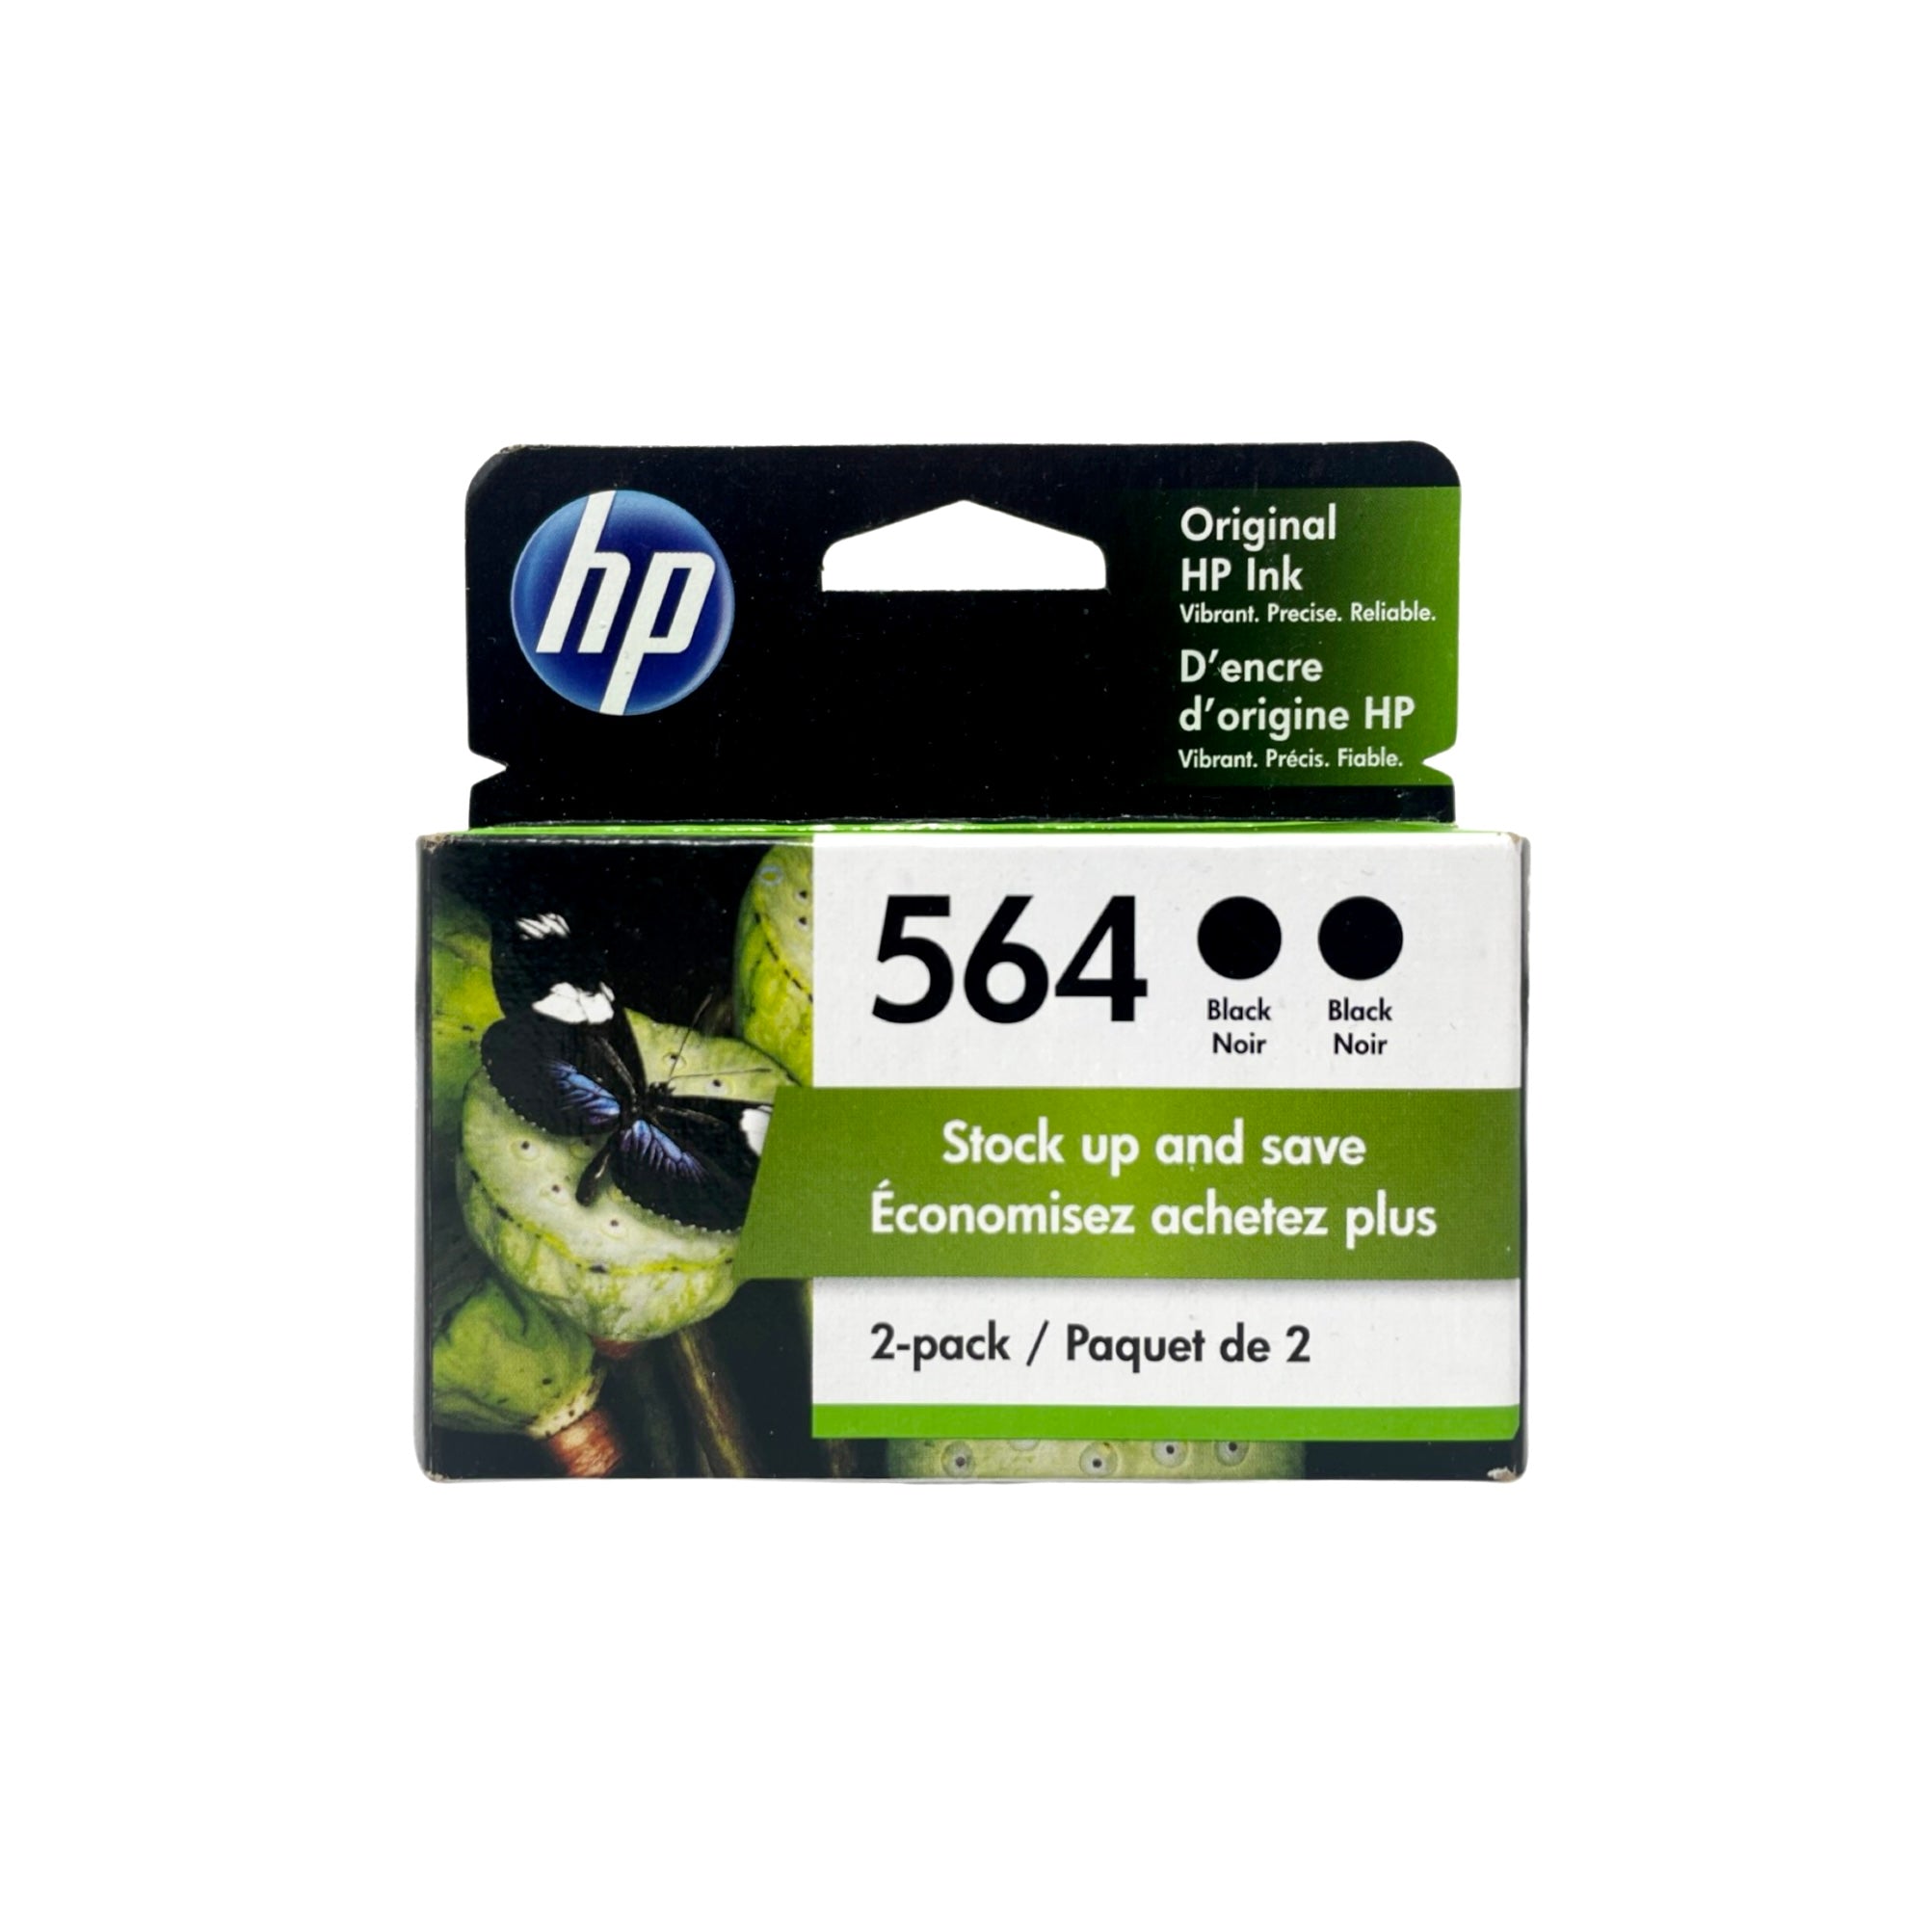 Genuine HP 564 Black Ink Cartridge, Standard Yield, 2/Pack (C2P51FN)